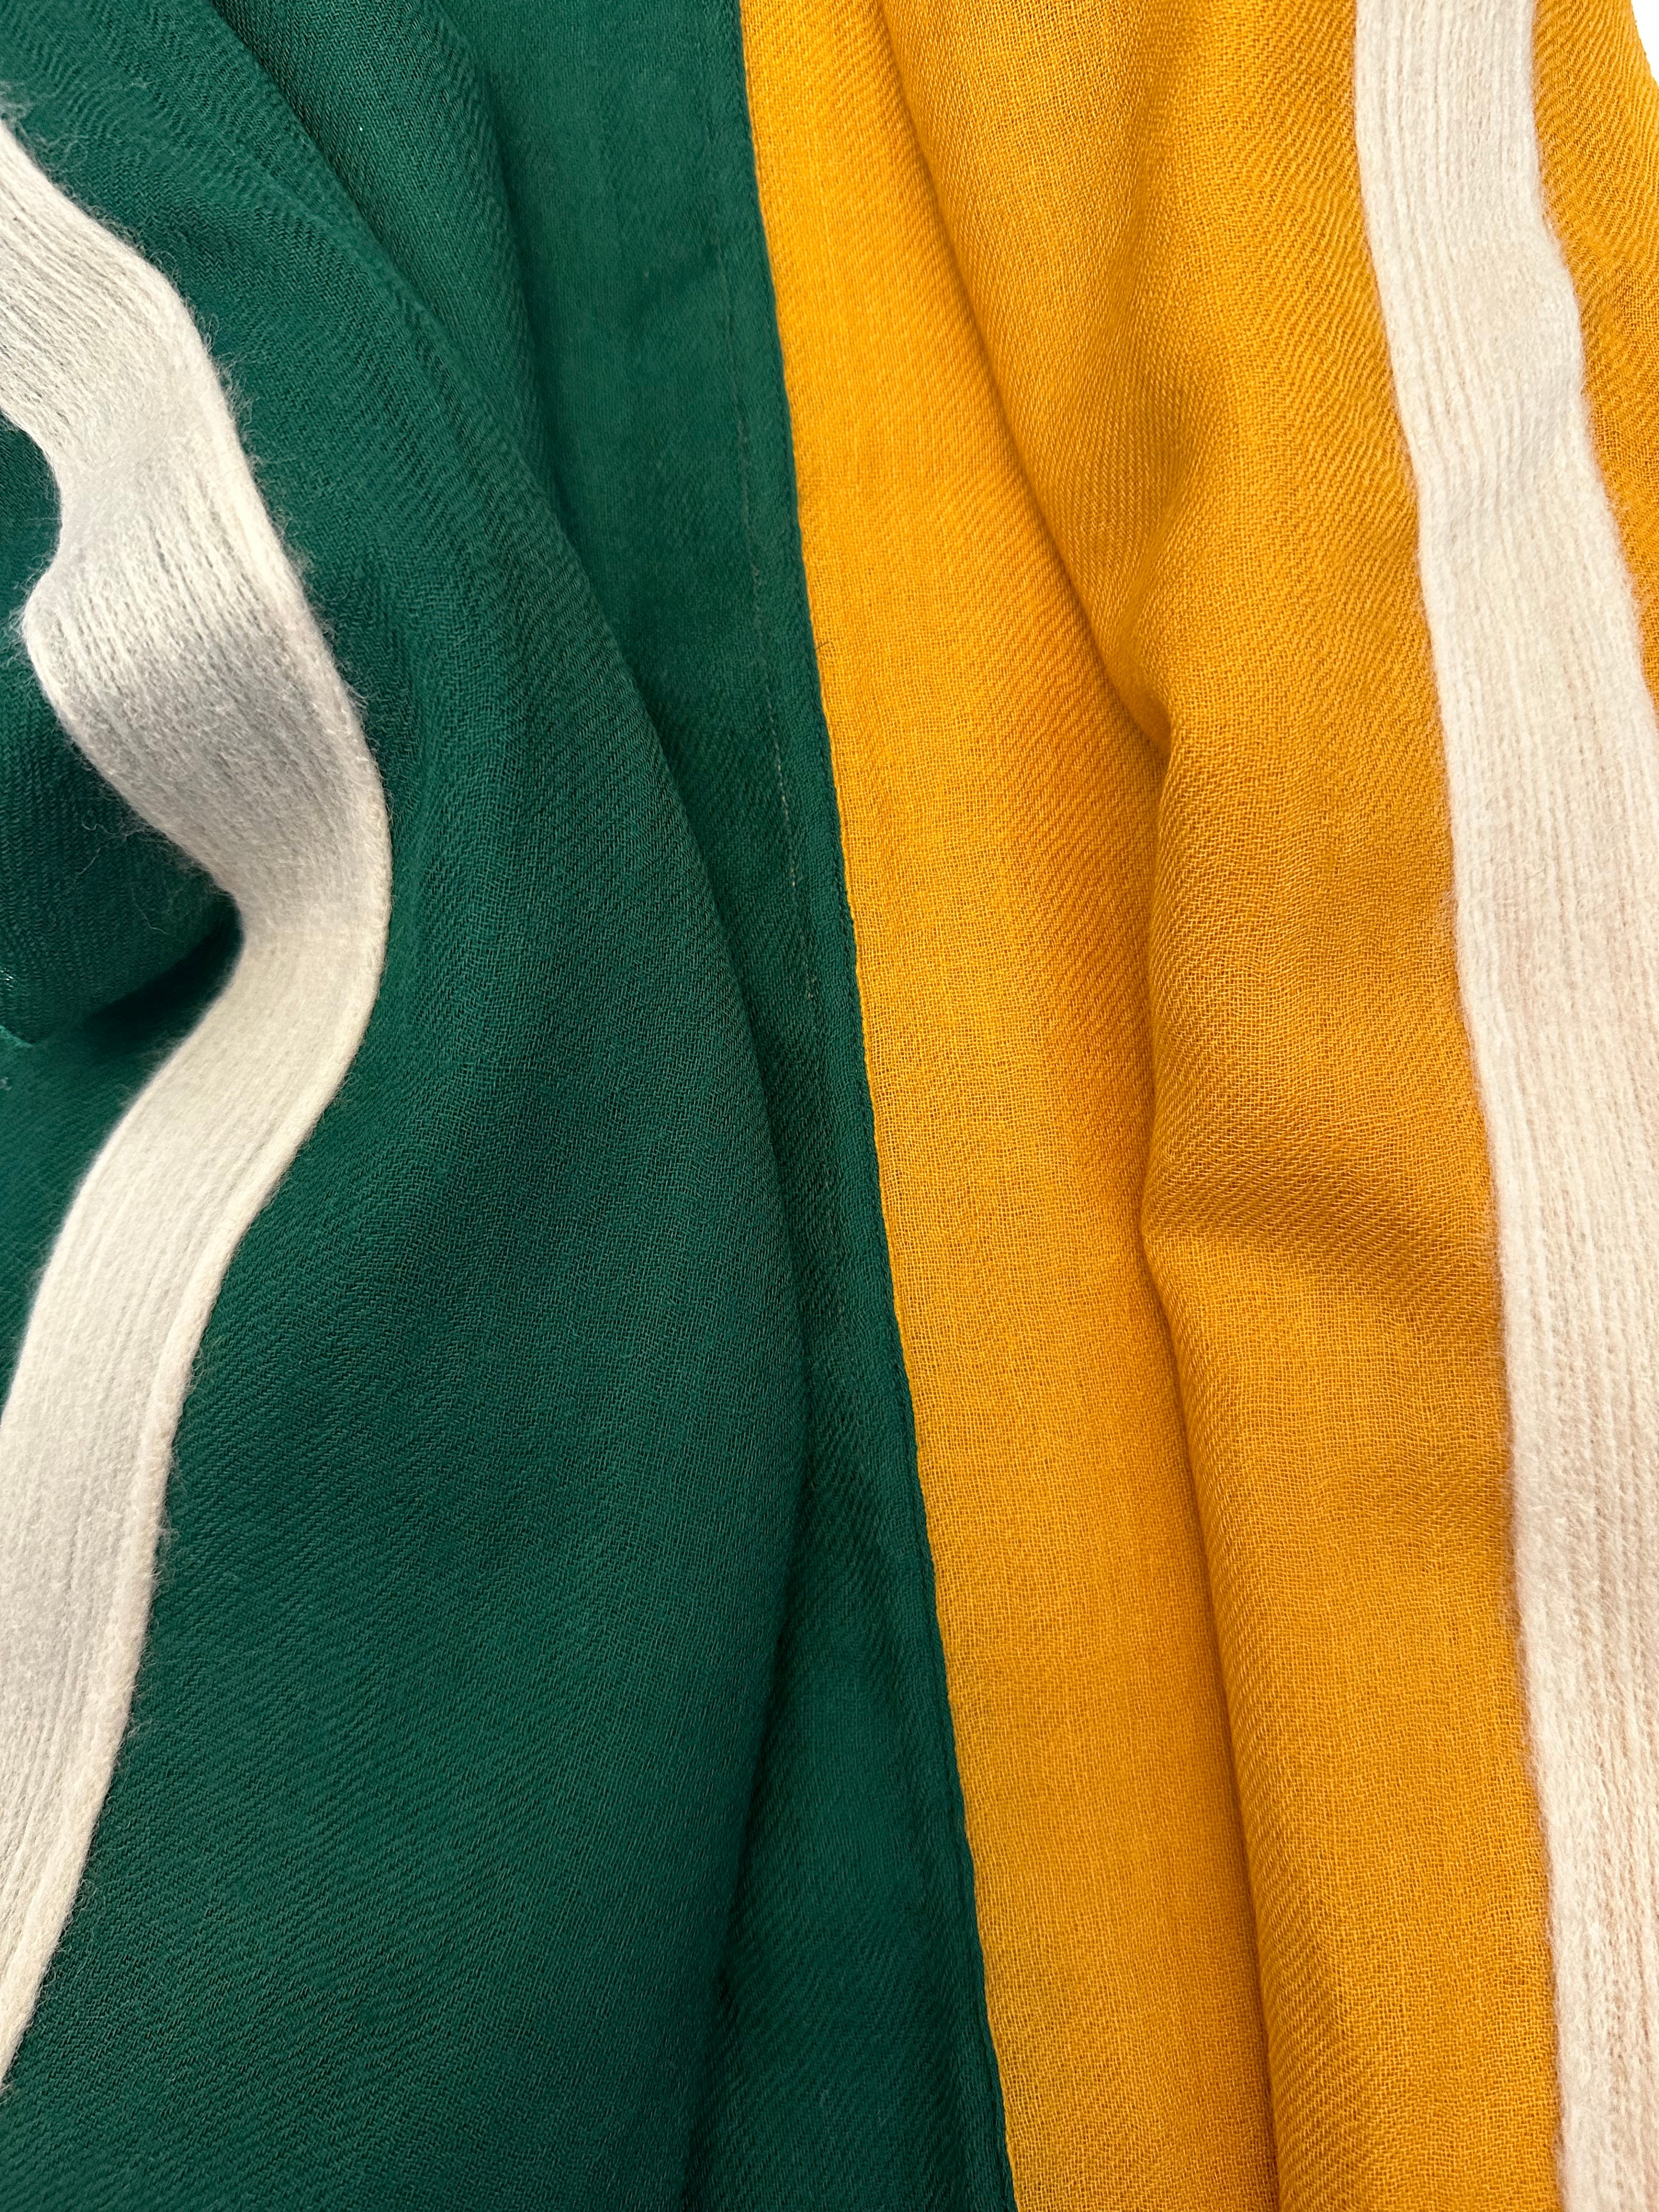 Sciarpa lana doppio colore agugliata verde gialla Franco Bassi